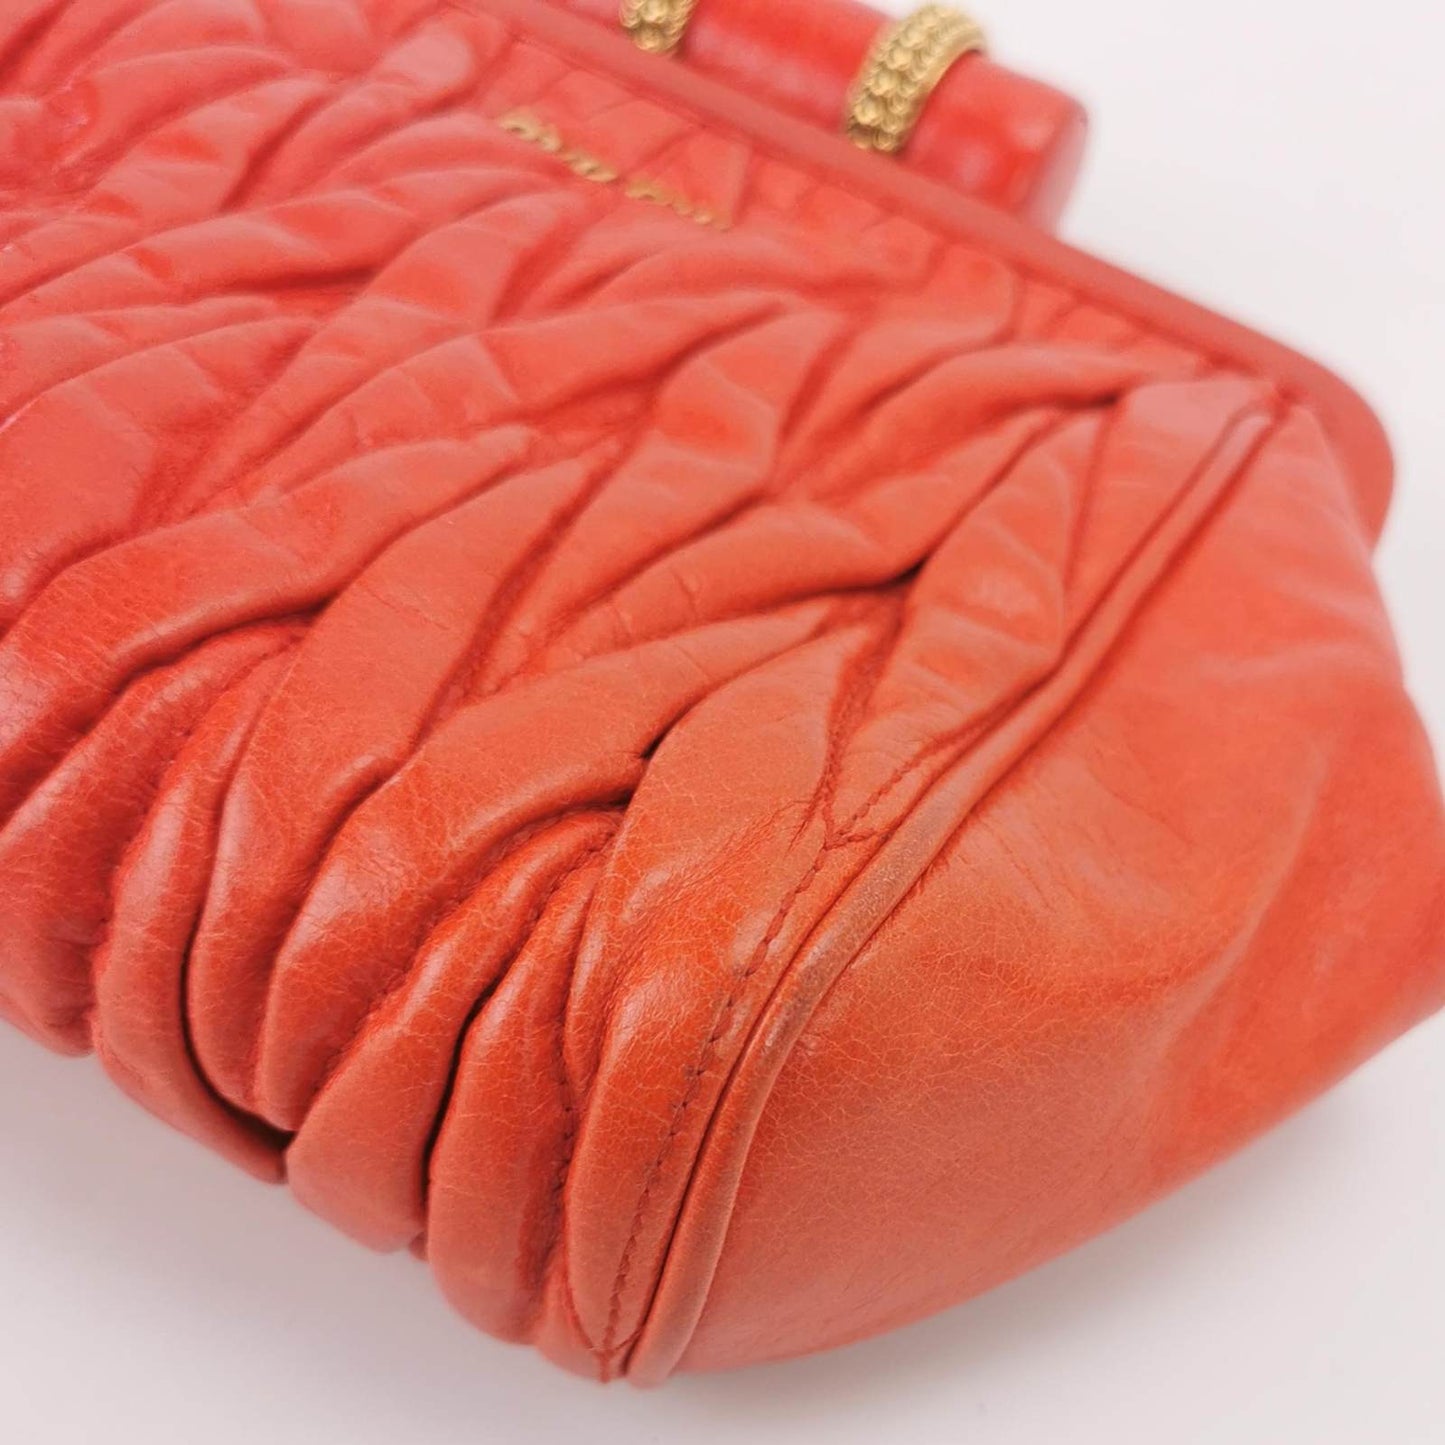 Miu Miu Gather Red Leather Clutch Second Bag